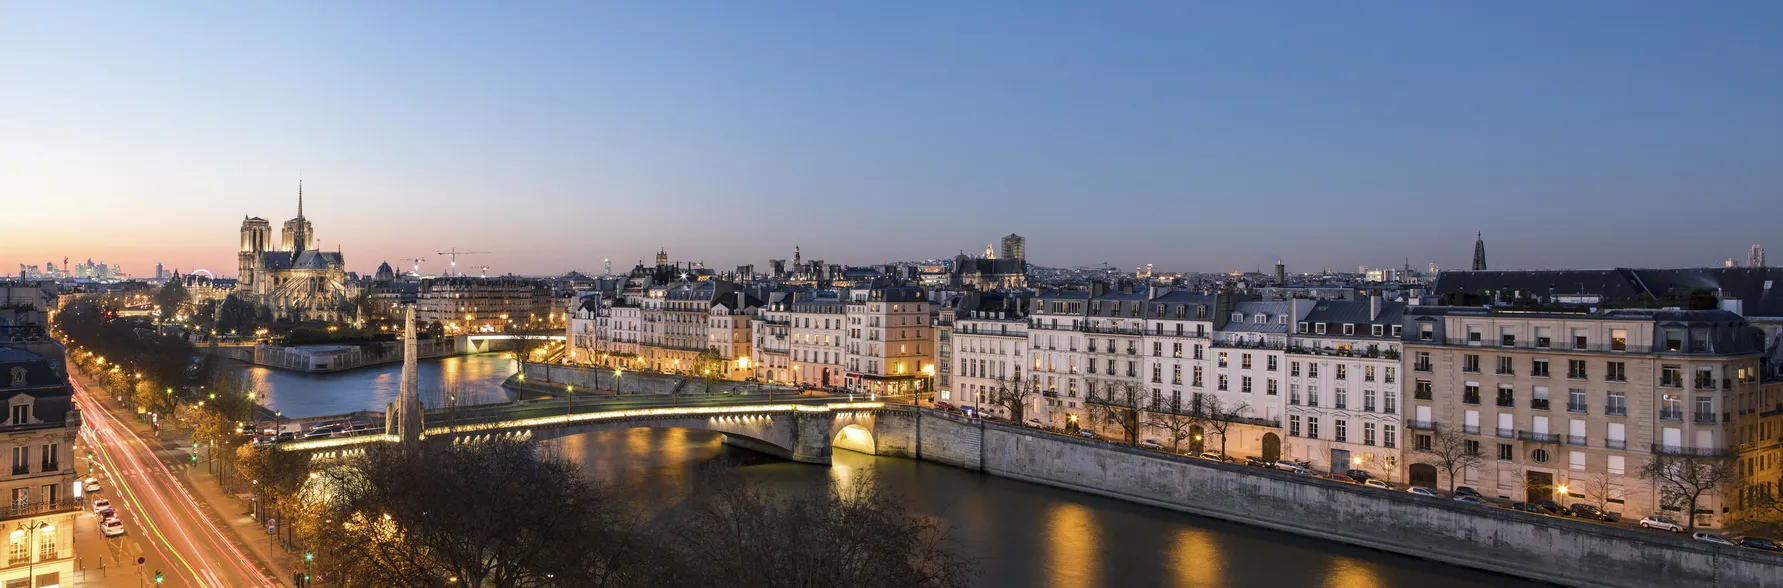 Panorama de la cathédrale Notre Dame de Paris au coucher du soleil © iStock / Joakim Leroy